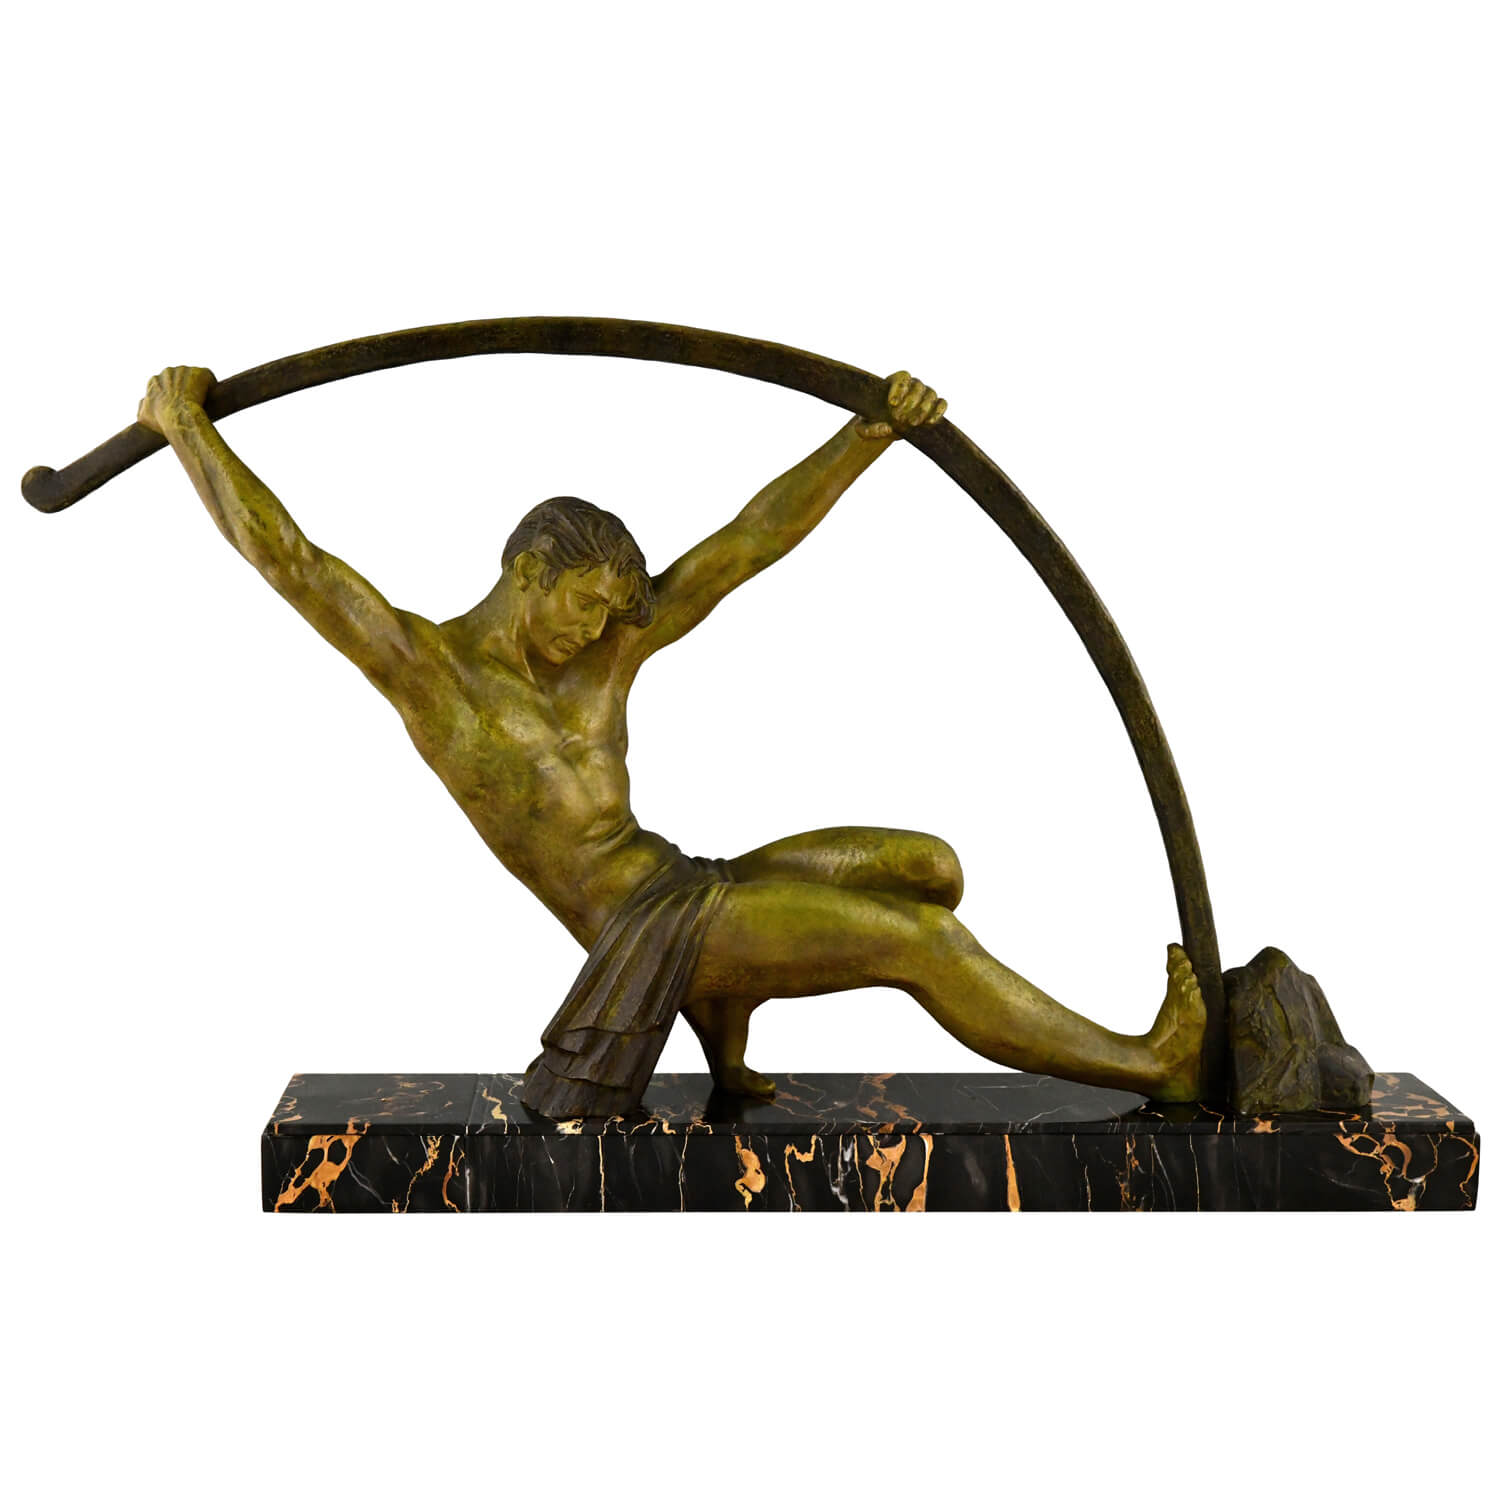 Art Deco sculpture athletic man bending a bar L’age du bronze